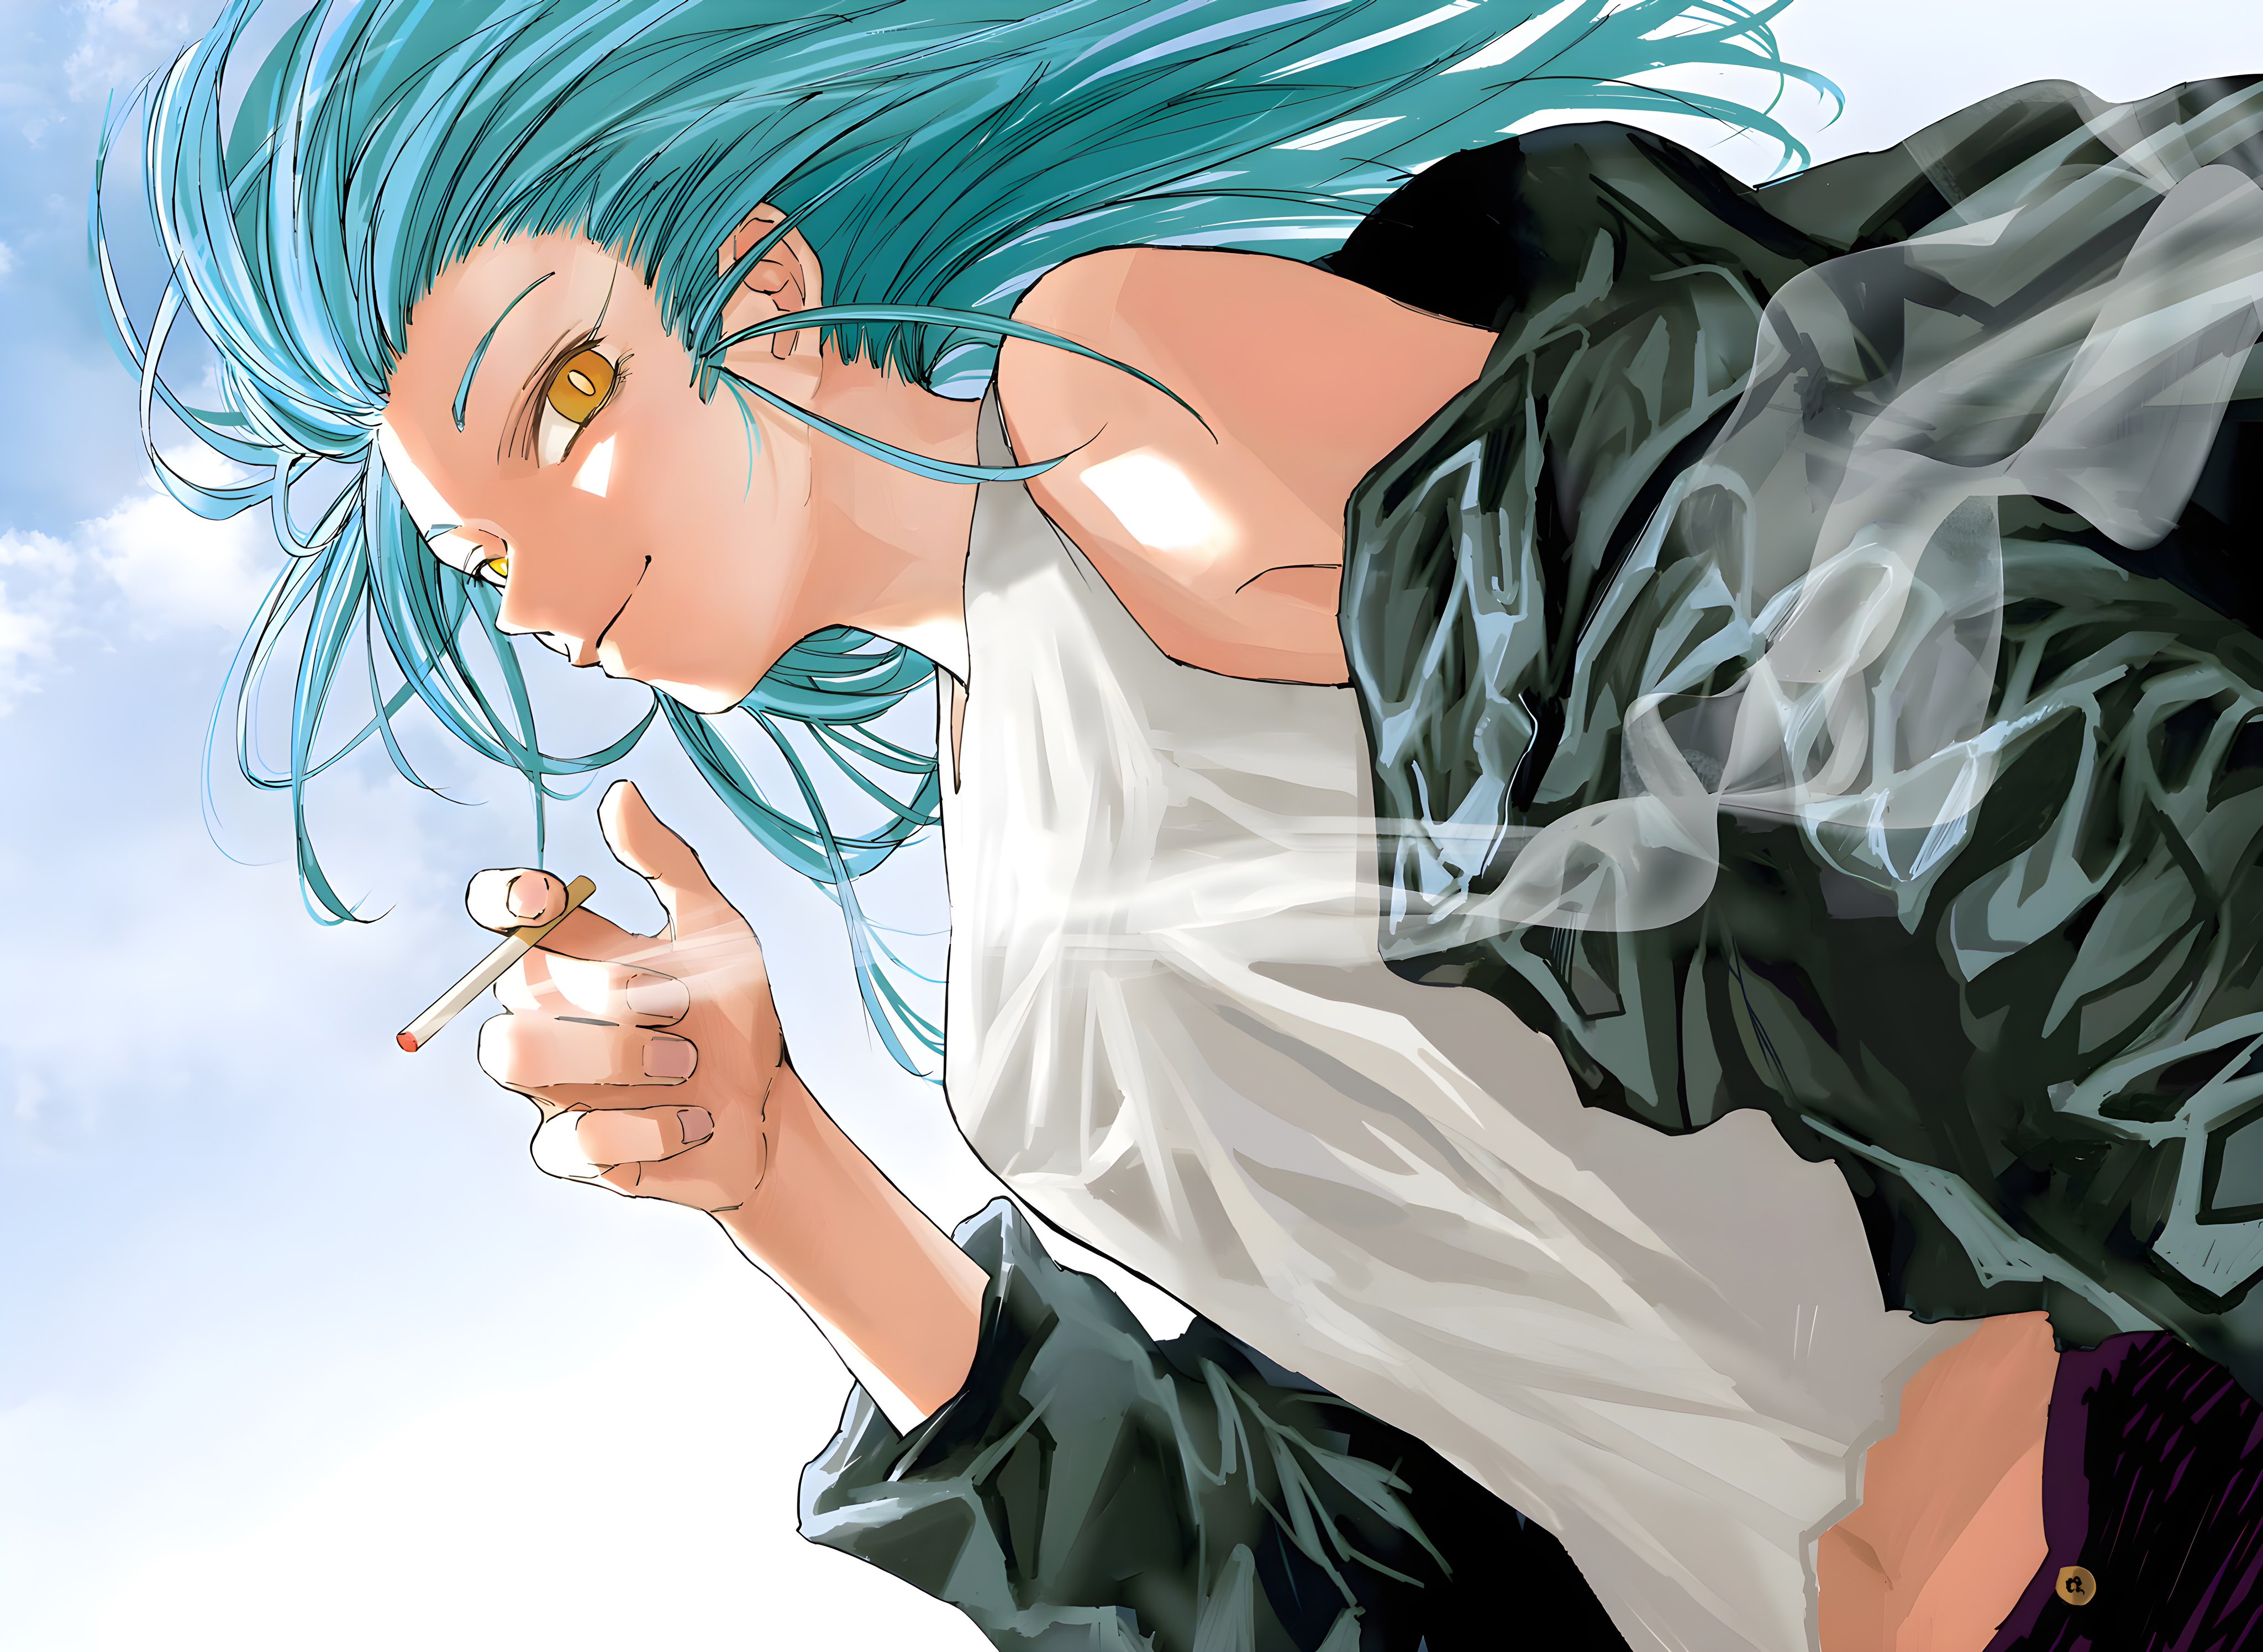 Anime 4096x2990 Sakamoto days anime anime girls cigarettes blue hair yellow eyes smoking smoke long hair looking at viewer smiling minimalism simple background sky clouds